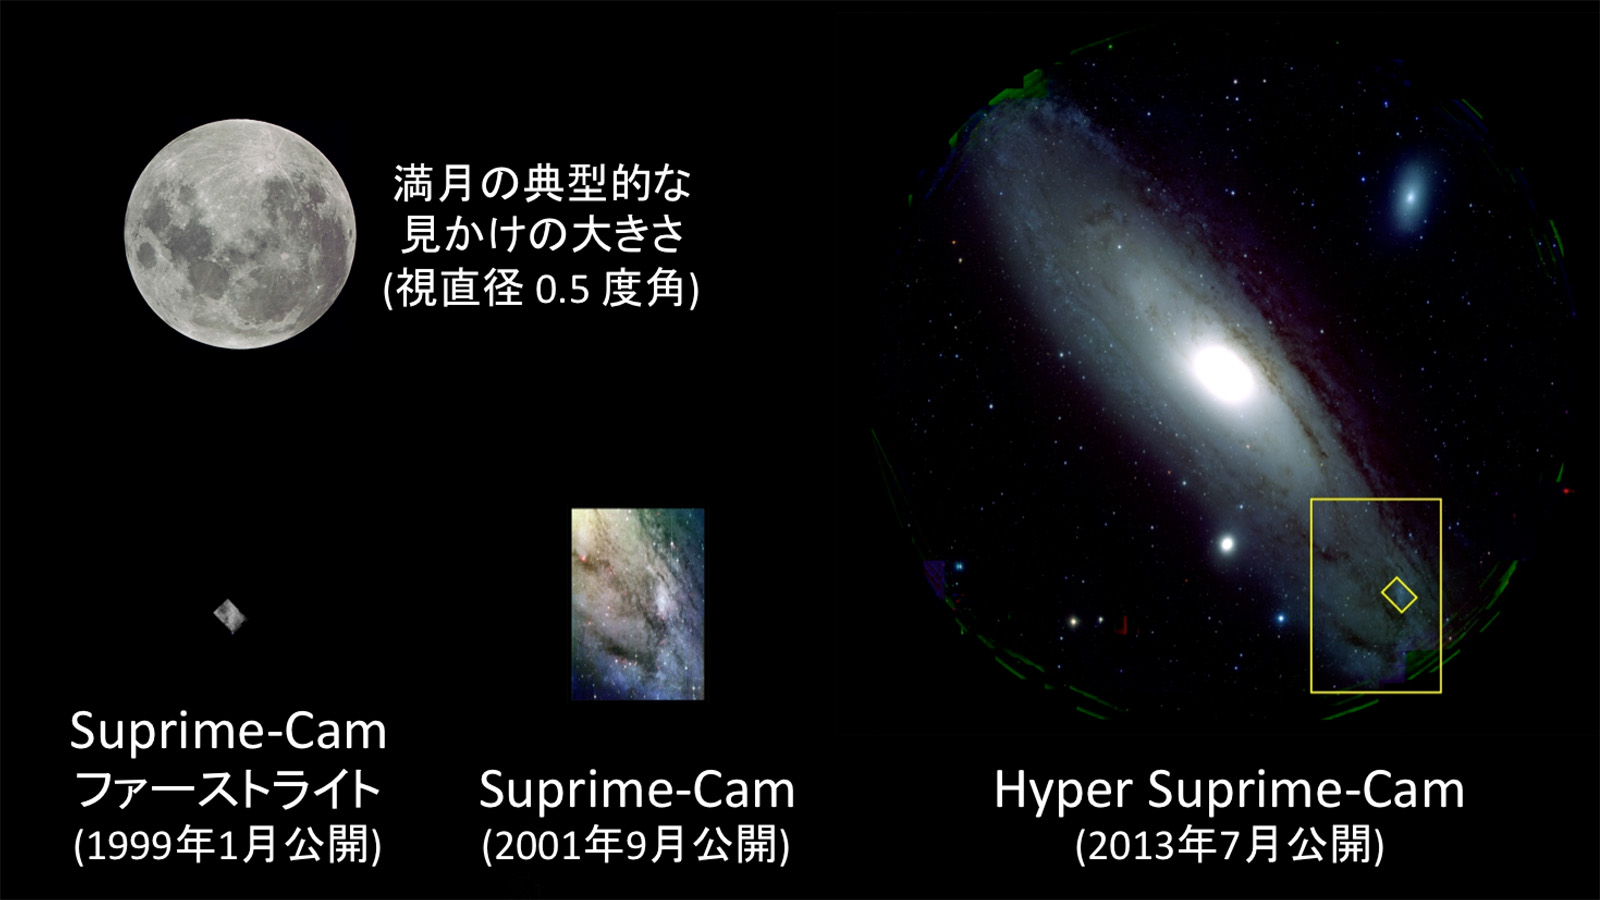 図２: すばる望遠鏡に当初から搭載されている Suprime-Cam (左下、中央) と、今回 HSC (右) が写し出したアンドロメダ銀河 M31 の視野の比較。黄色い枠は過去に Suprime-Cam で撮影された領域を示します。左上には月の典型的な見かけの大きさが示されています。(クレジット：国立天文台)